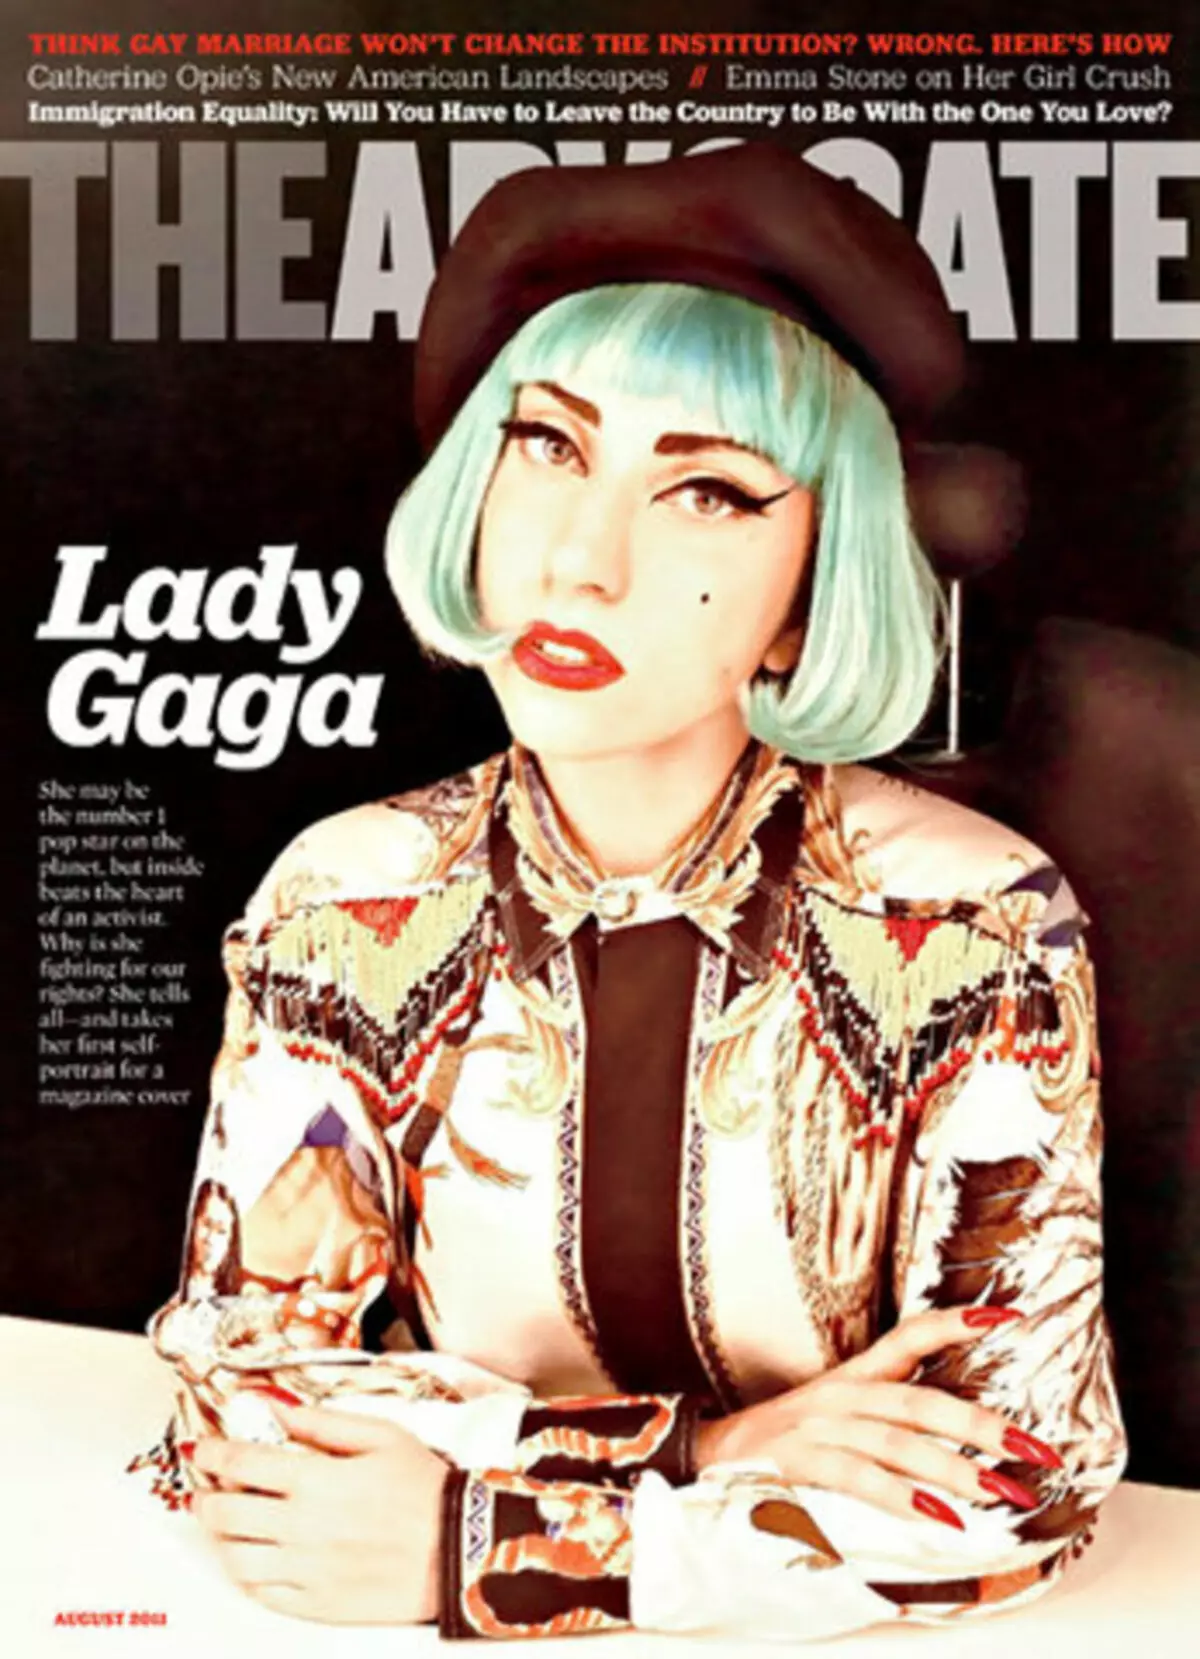 Lady Gaga gay komunitatea manipulatzen duen adierazpen batek iraindu zuen